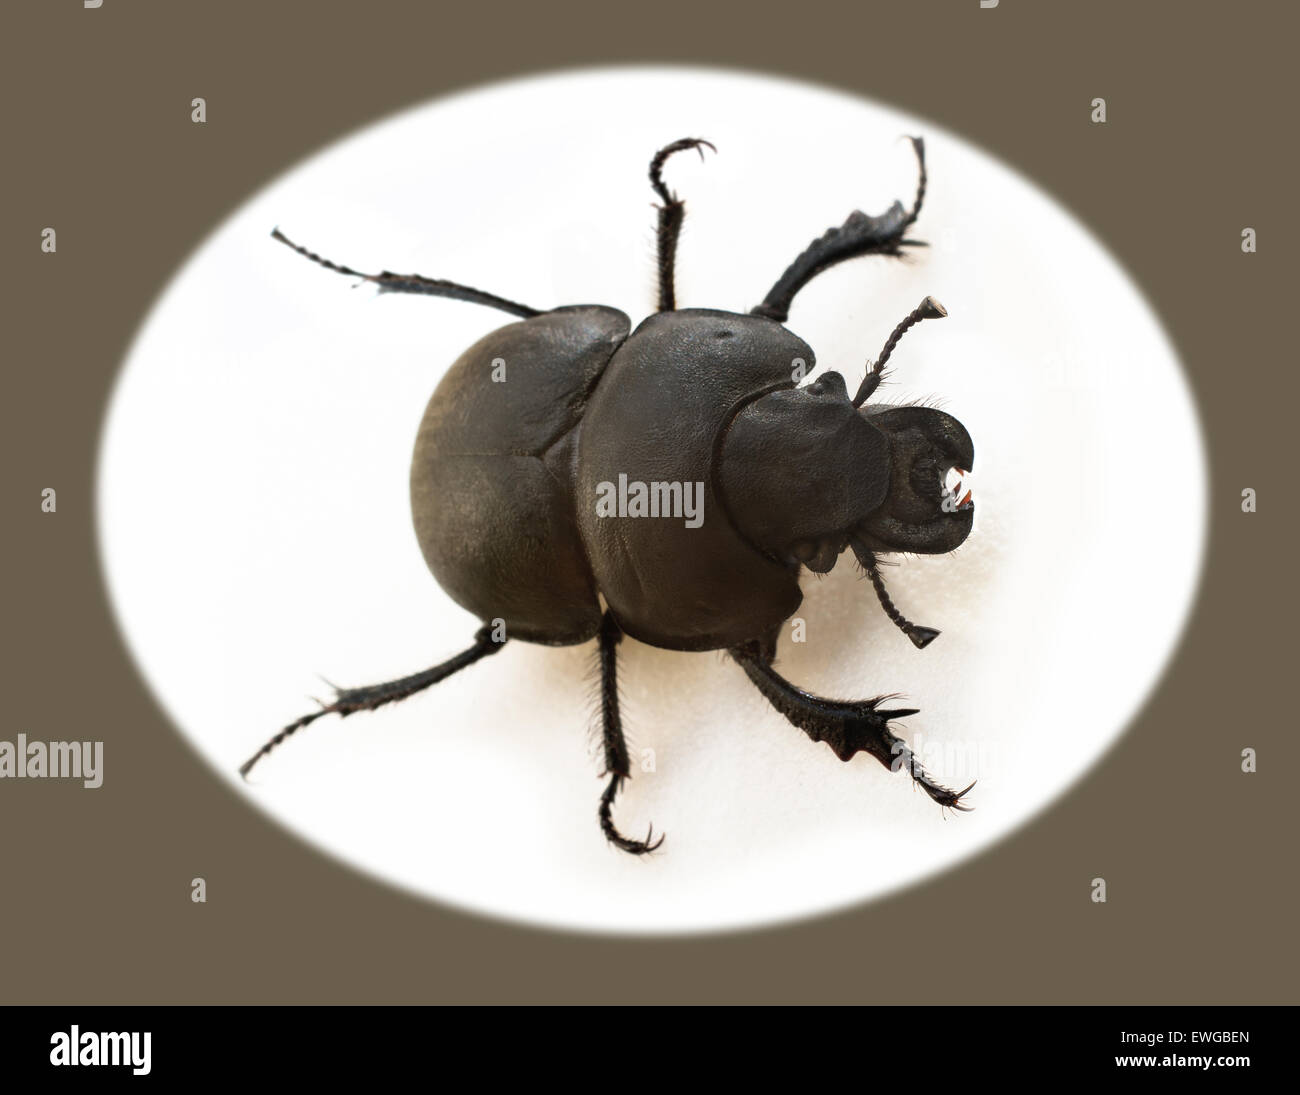 Beetle Krawczyk-holovatch (lat. Lethrus apterus) es un escarabajo de la familia de los escarabajos del estiércol de animales (excavadores Geotrupidae). Foto de stock